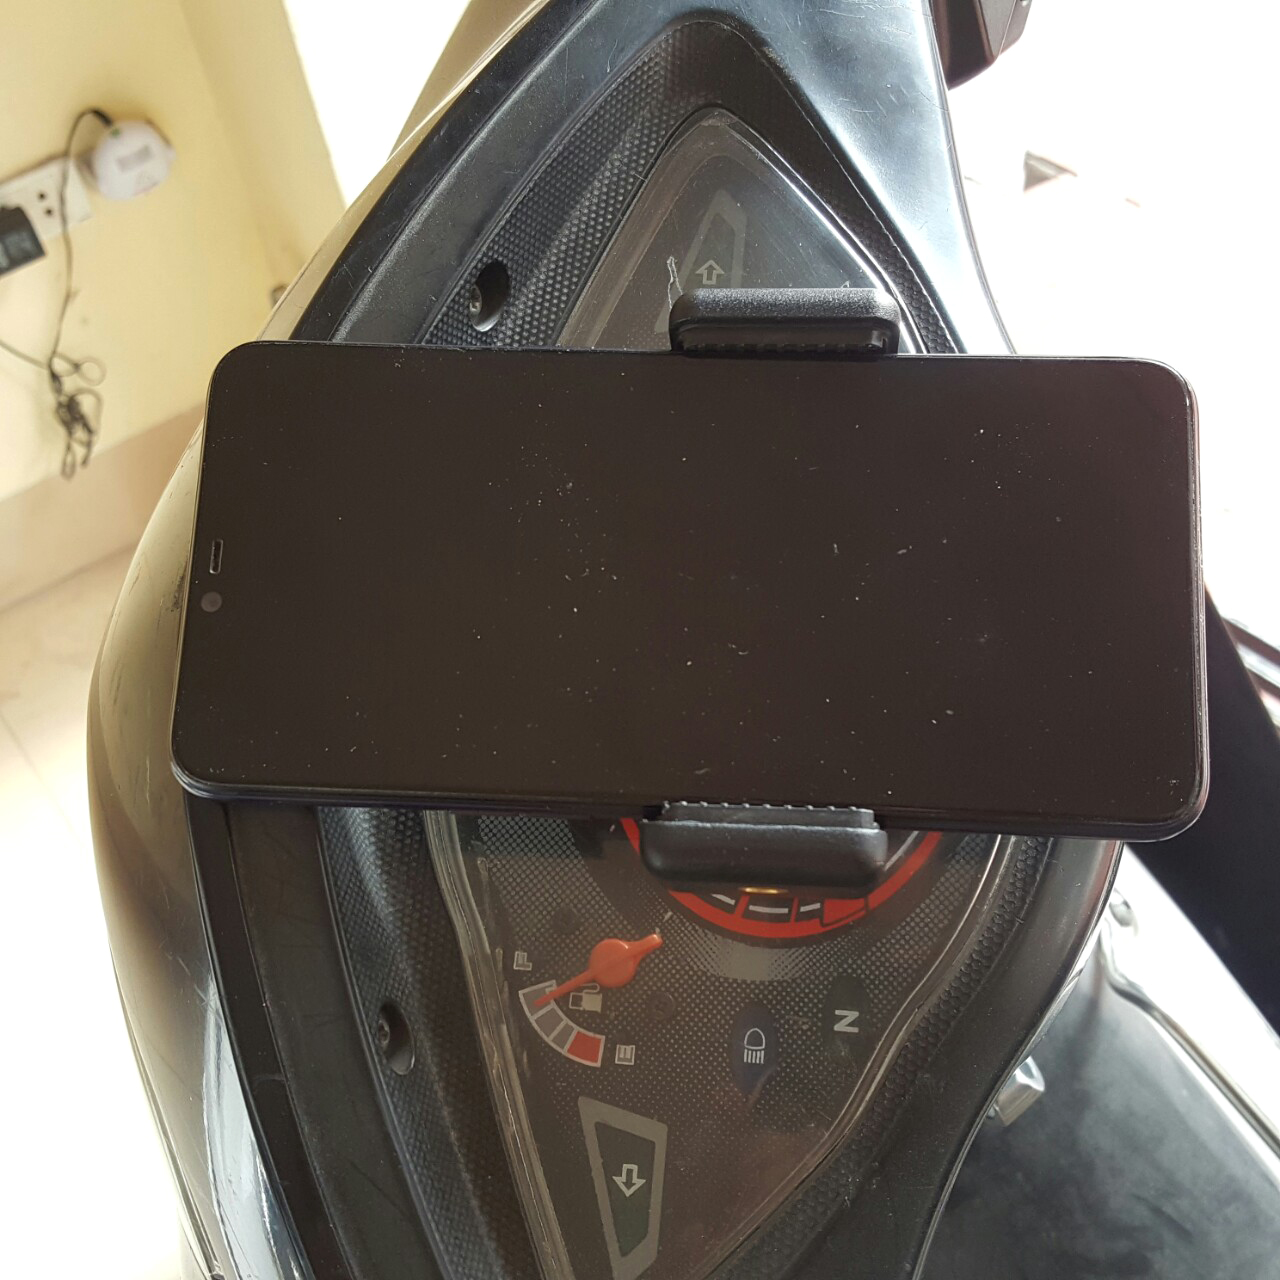 Bộ phụ kiện gắn điện thoại vào mặt đồng hồ xe máy cho các bạn SHIPPER và các bạn chạy xe ôm công nghệ Grab, Bee, Gojek